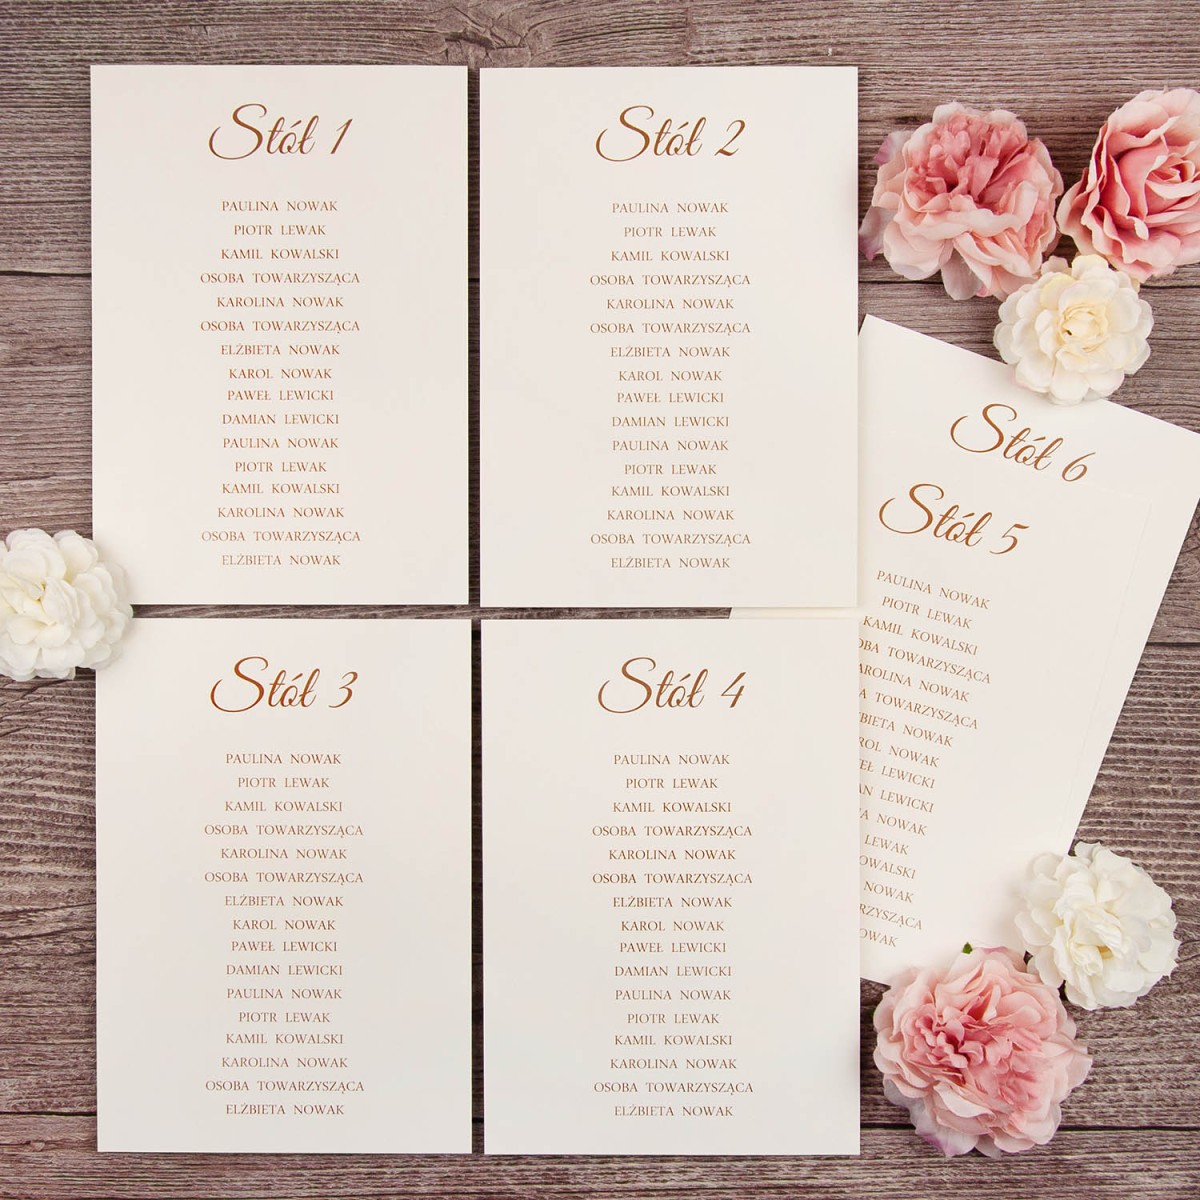 Plany stołów weselnych (rozmieszczenie gości) na pojedynczych kartach na papierze ecru - Ecru Envelope